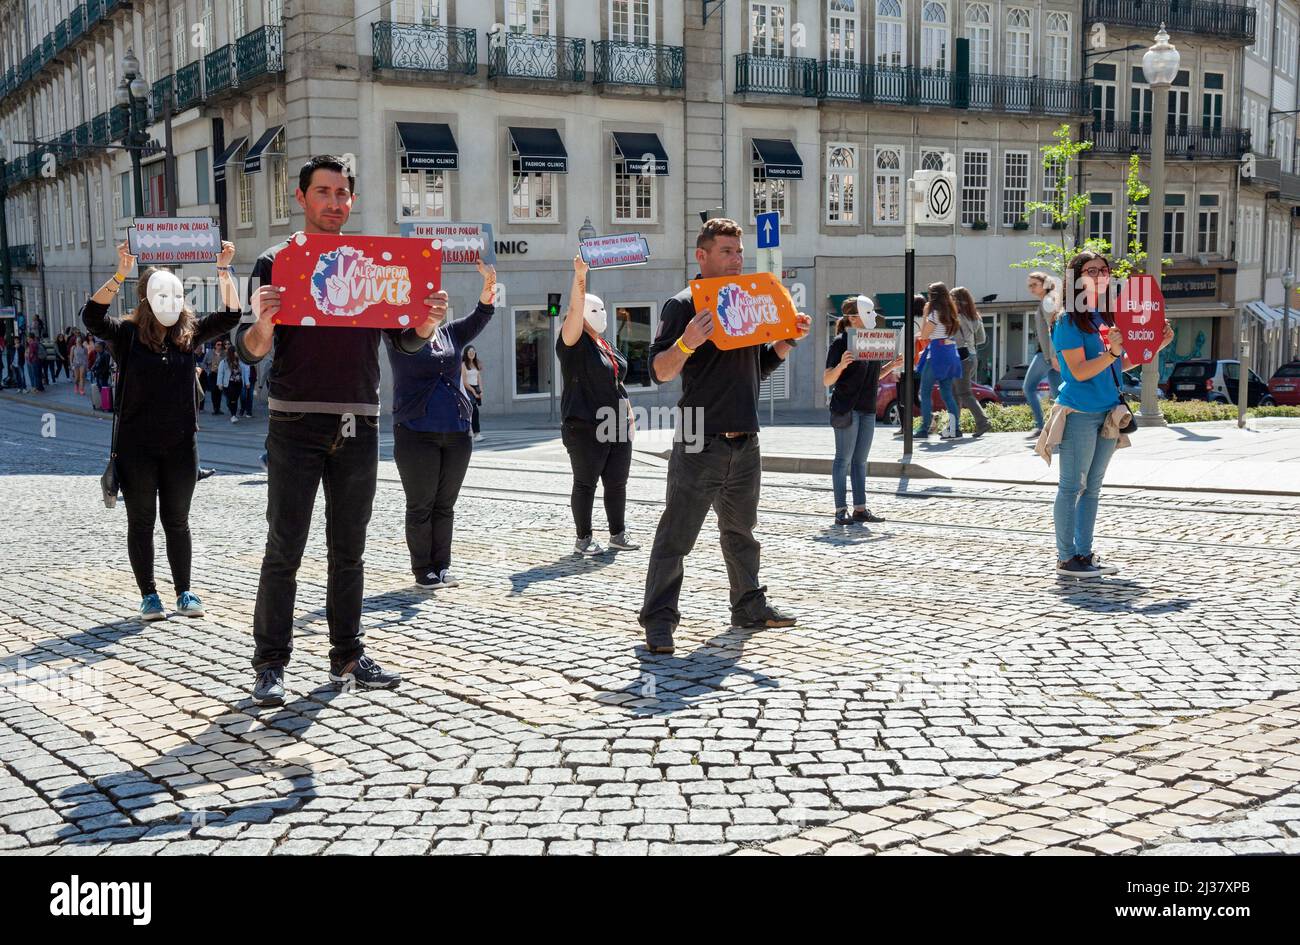 Europa, Portugal, Porto, Praca da Liberdade, Demonstration von Menschen zur Sensibilisierung für psychische Probleme beim Fußgängerüberweg. Stockfoto